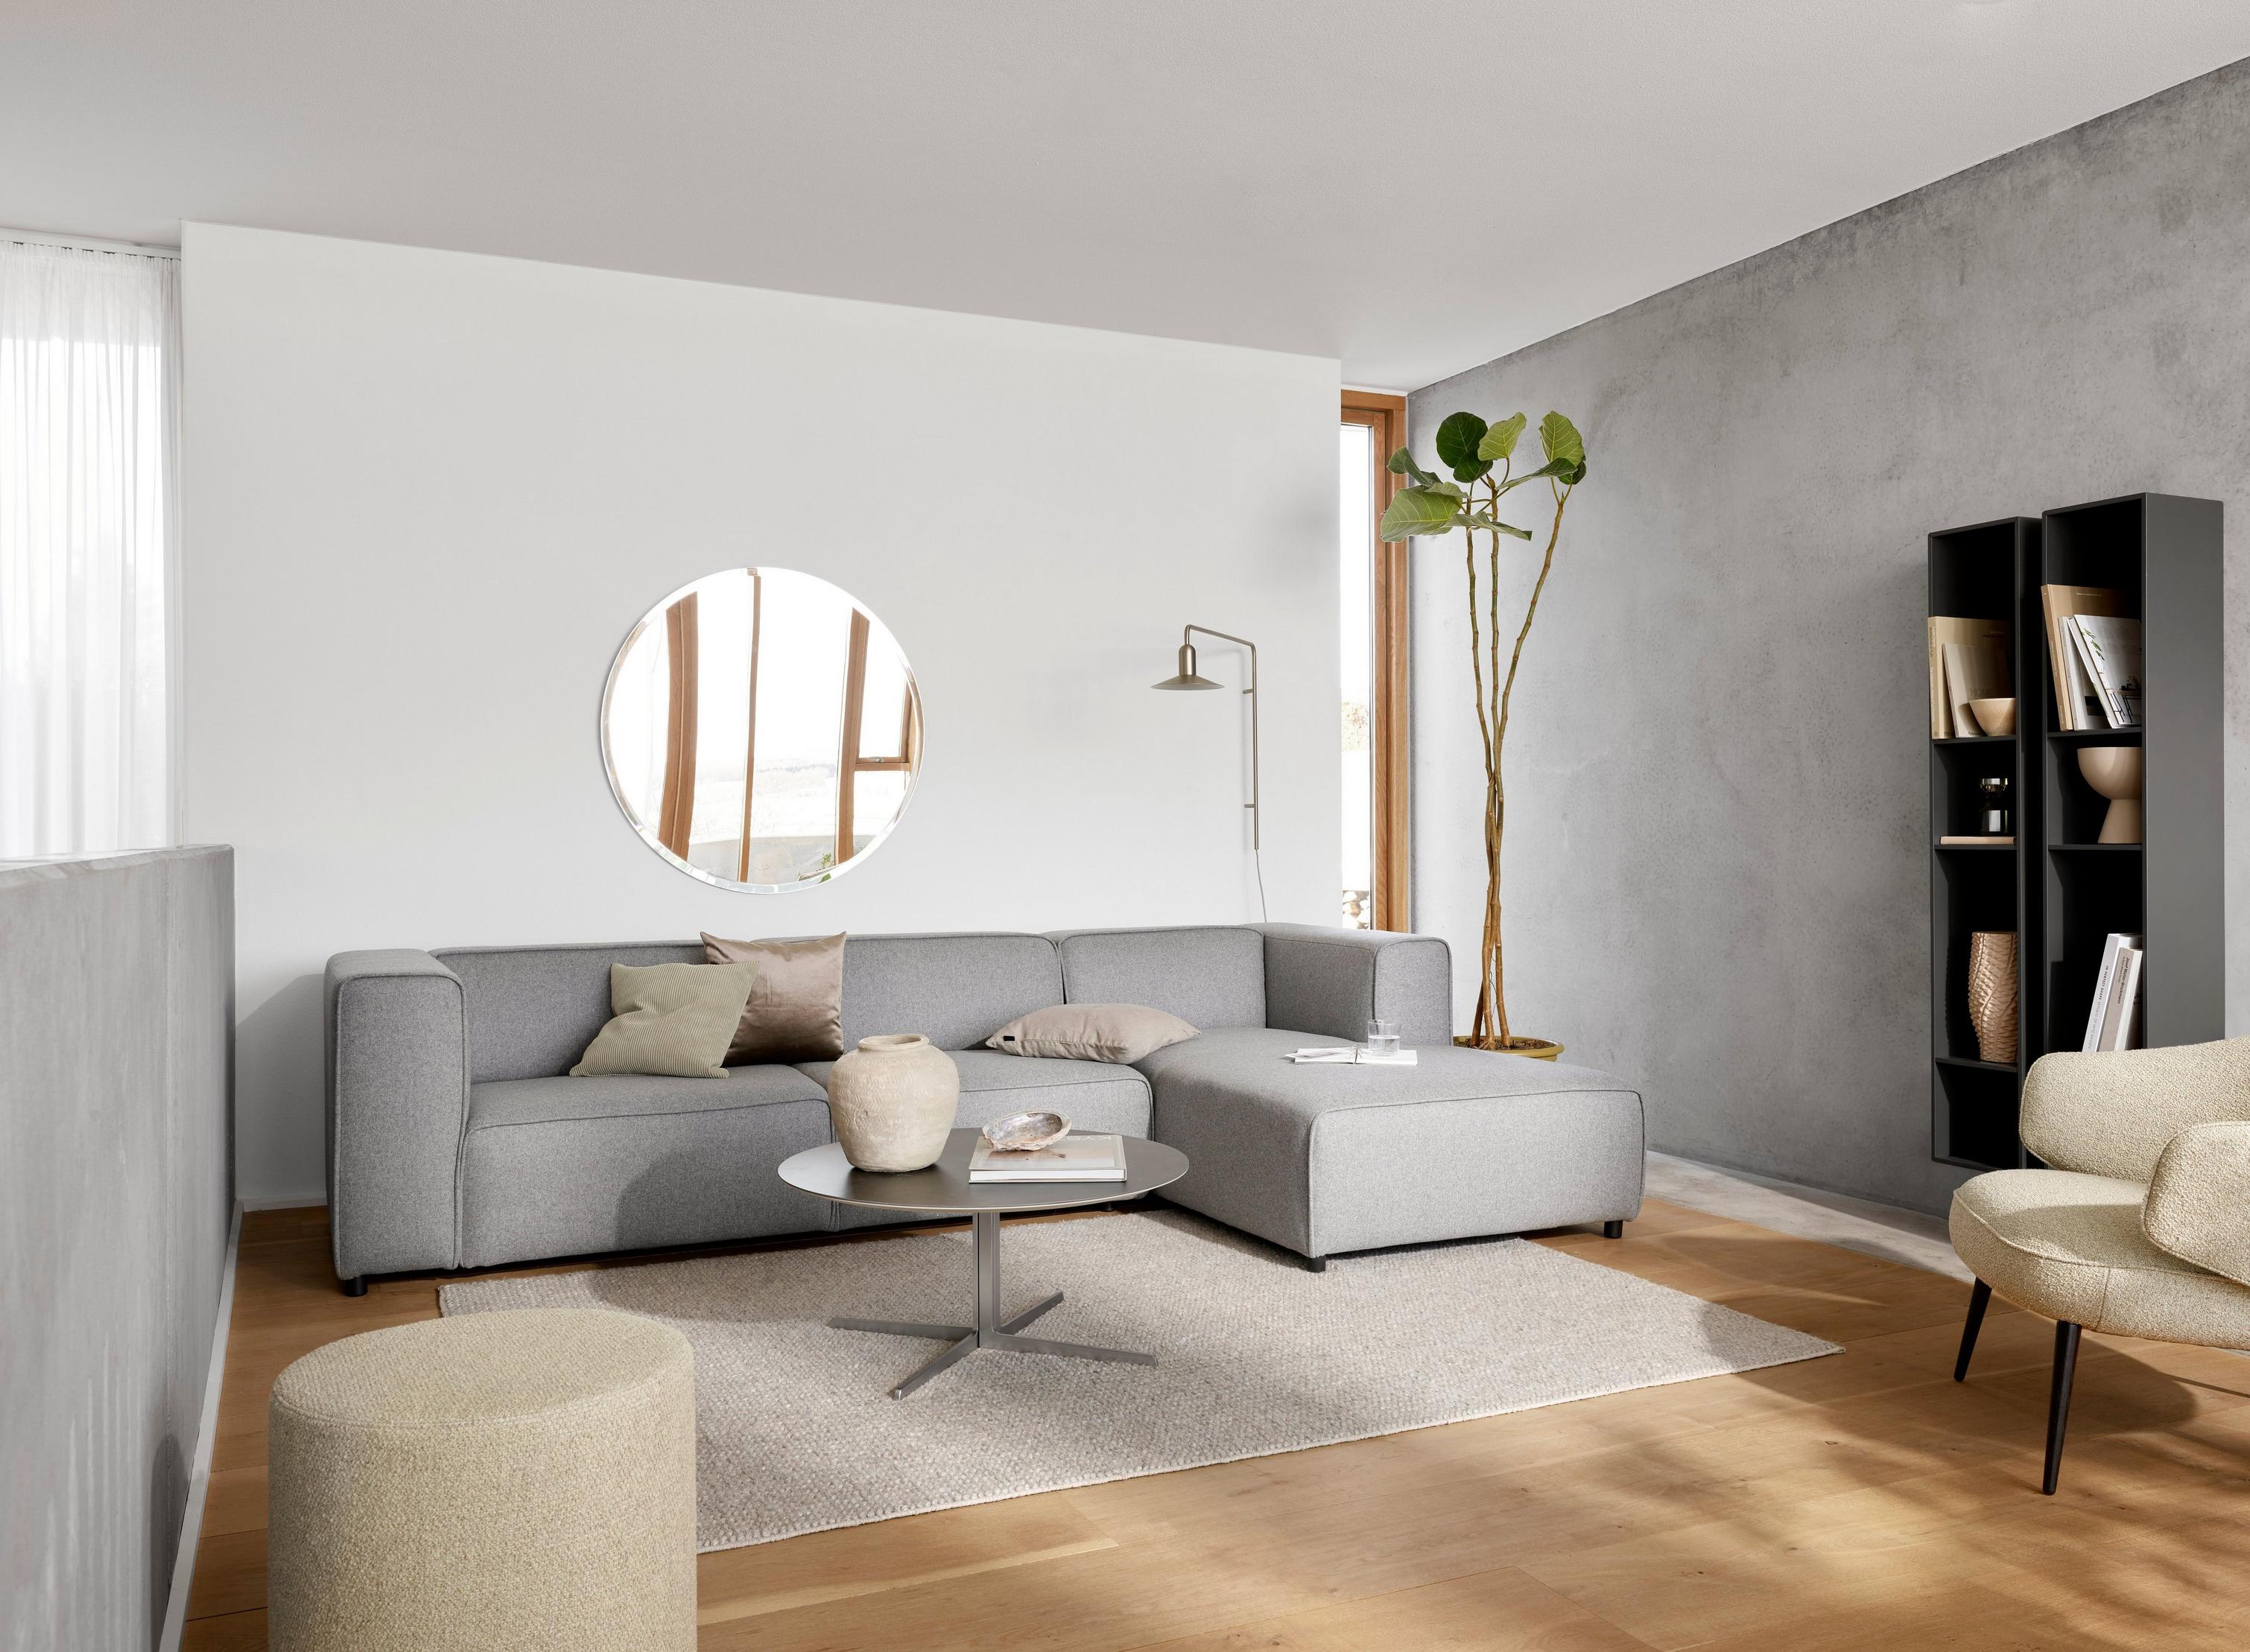 Угловой диван Carmo с модулем для отдыха с обивкой из ткани Tomelilla серого цвета и журнальным столиком Sevilla